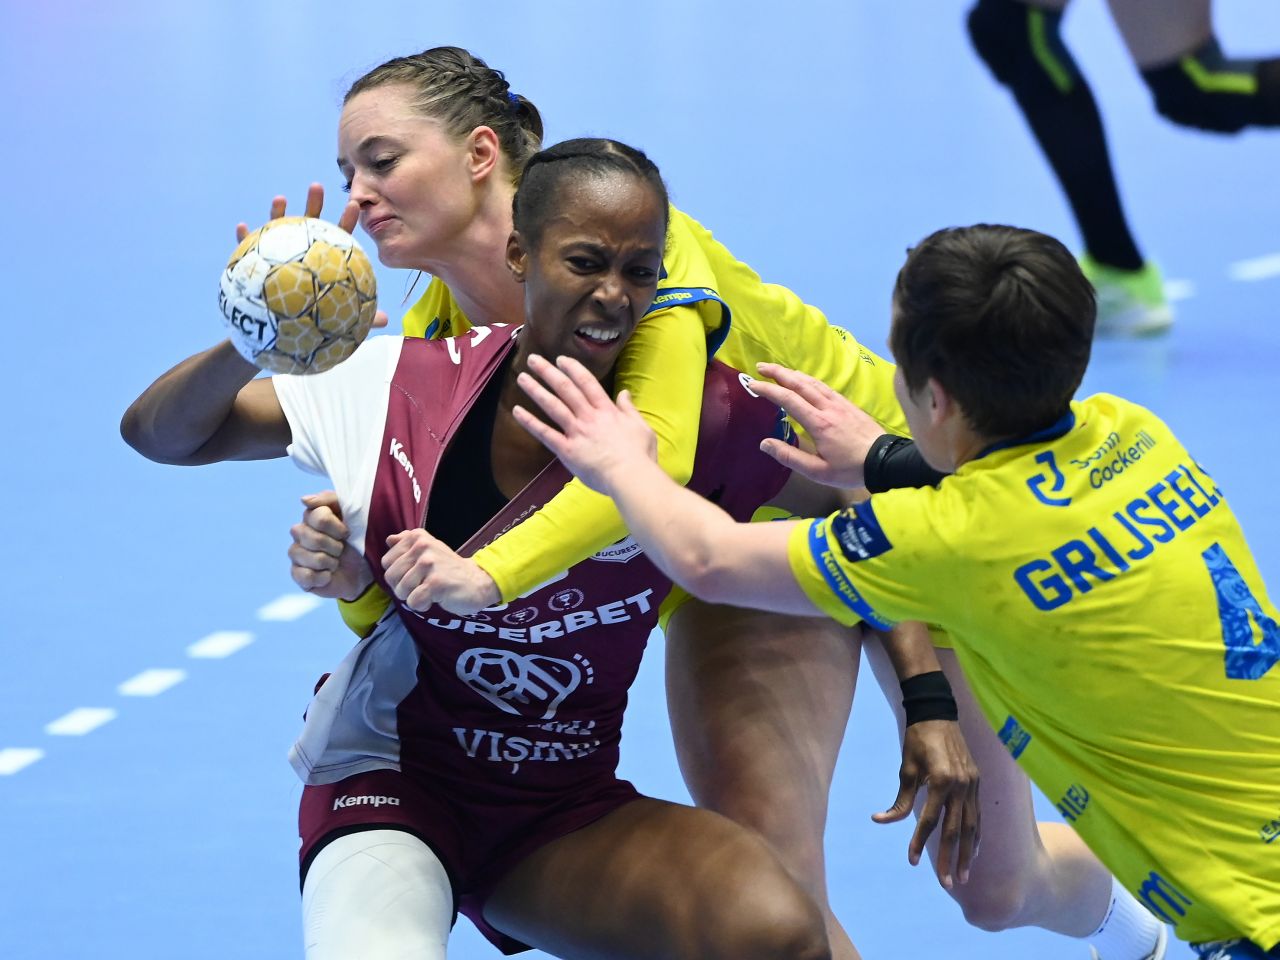 Rapid - Metz 31-34 (18-16), în Liga Campionilor la handbal feminin. Victorie scăpată printre degete_4